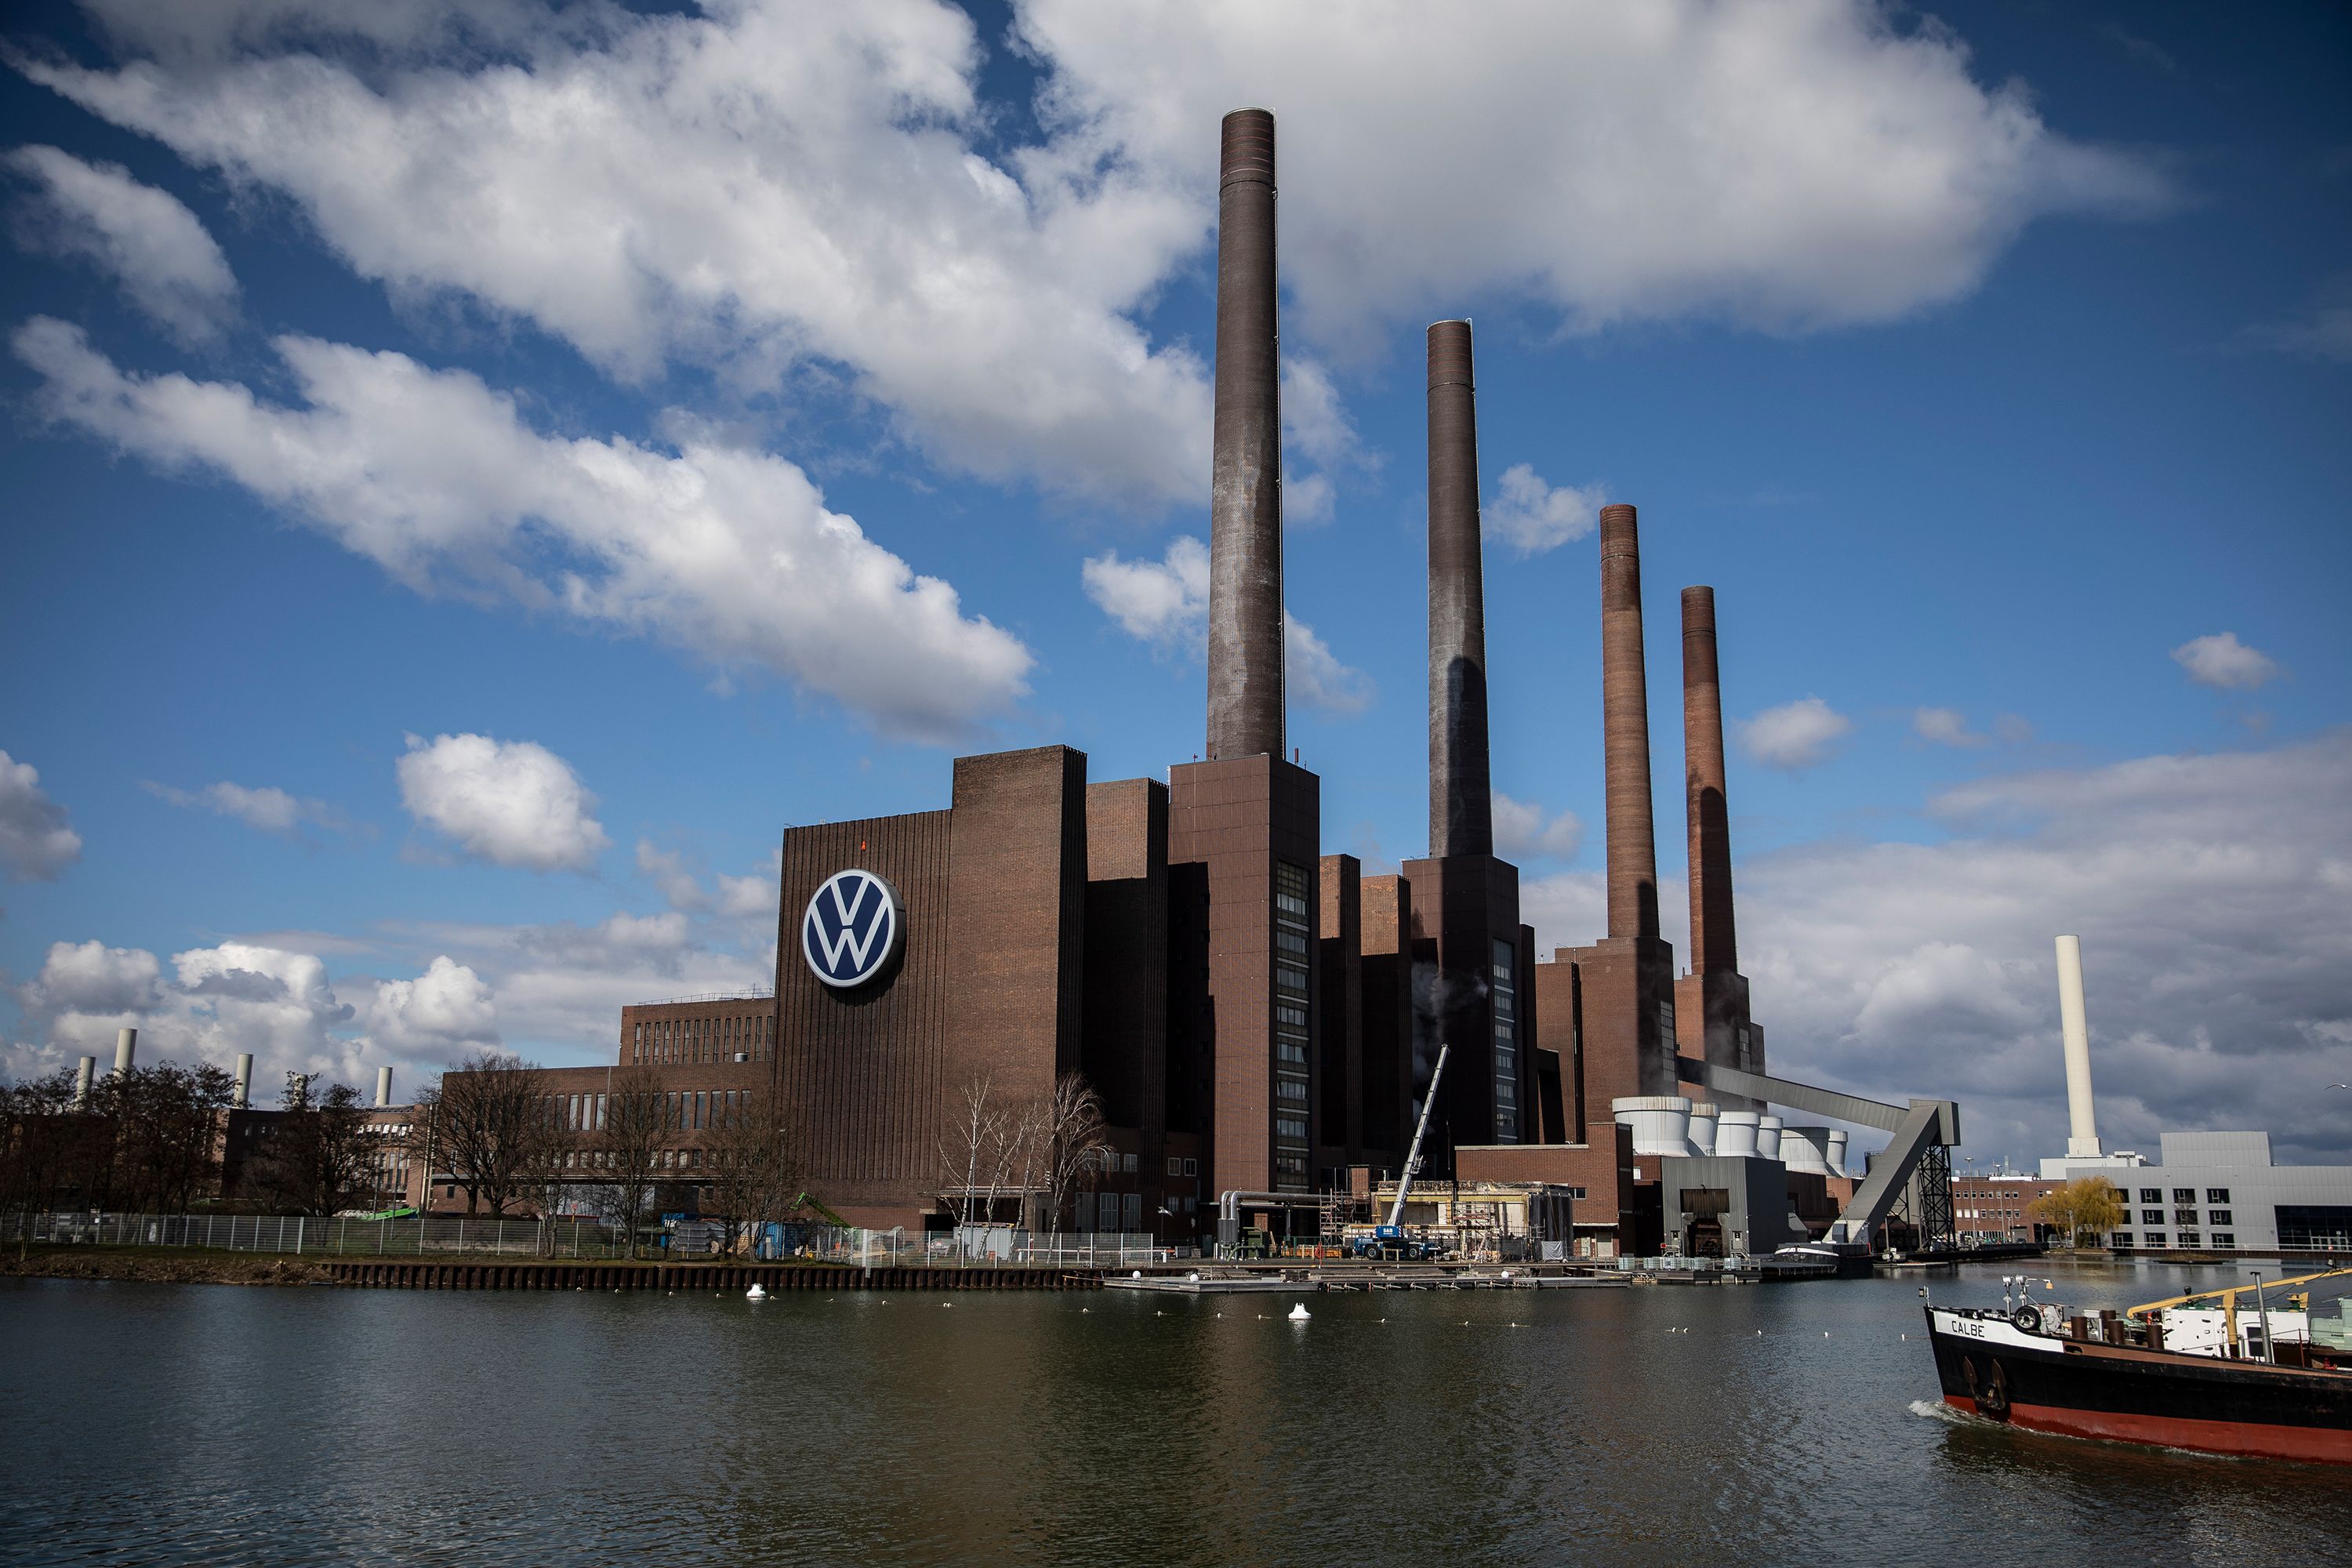 Germany: VW Wolfsburg plant reopens after coronavirus shutdown